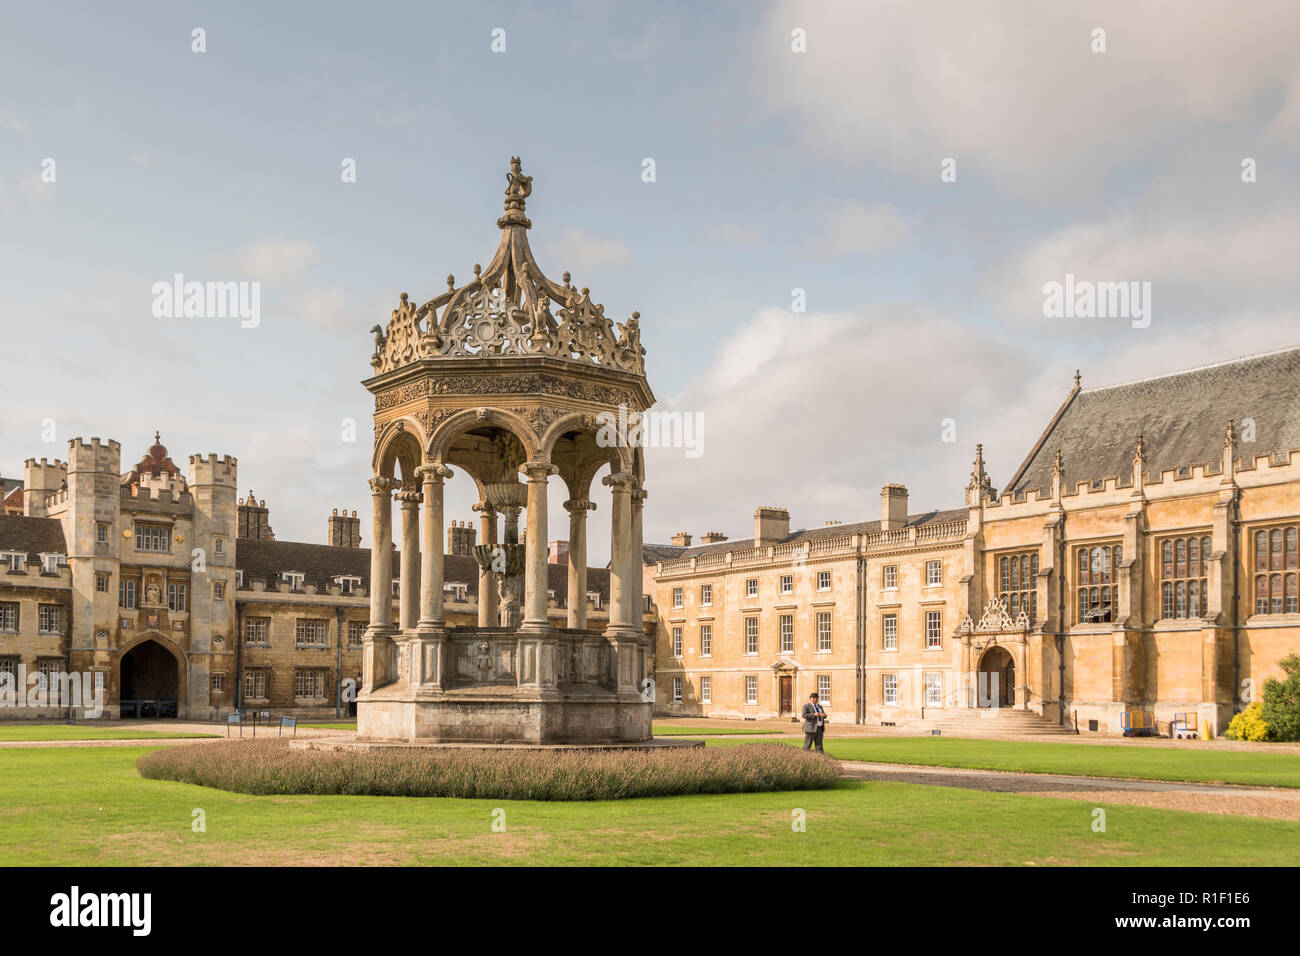 Trinity College, Cambridge, England, UK Stock Photo